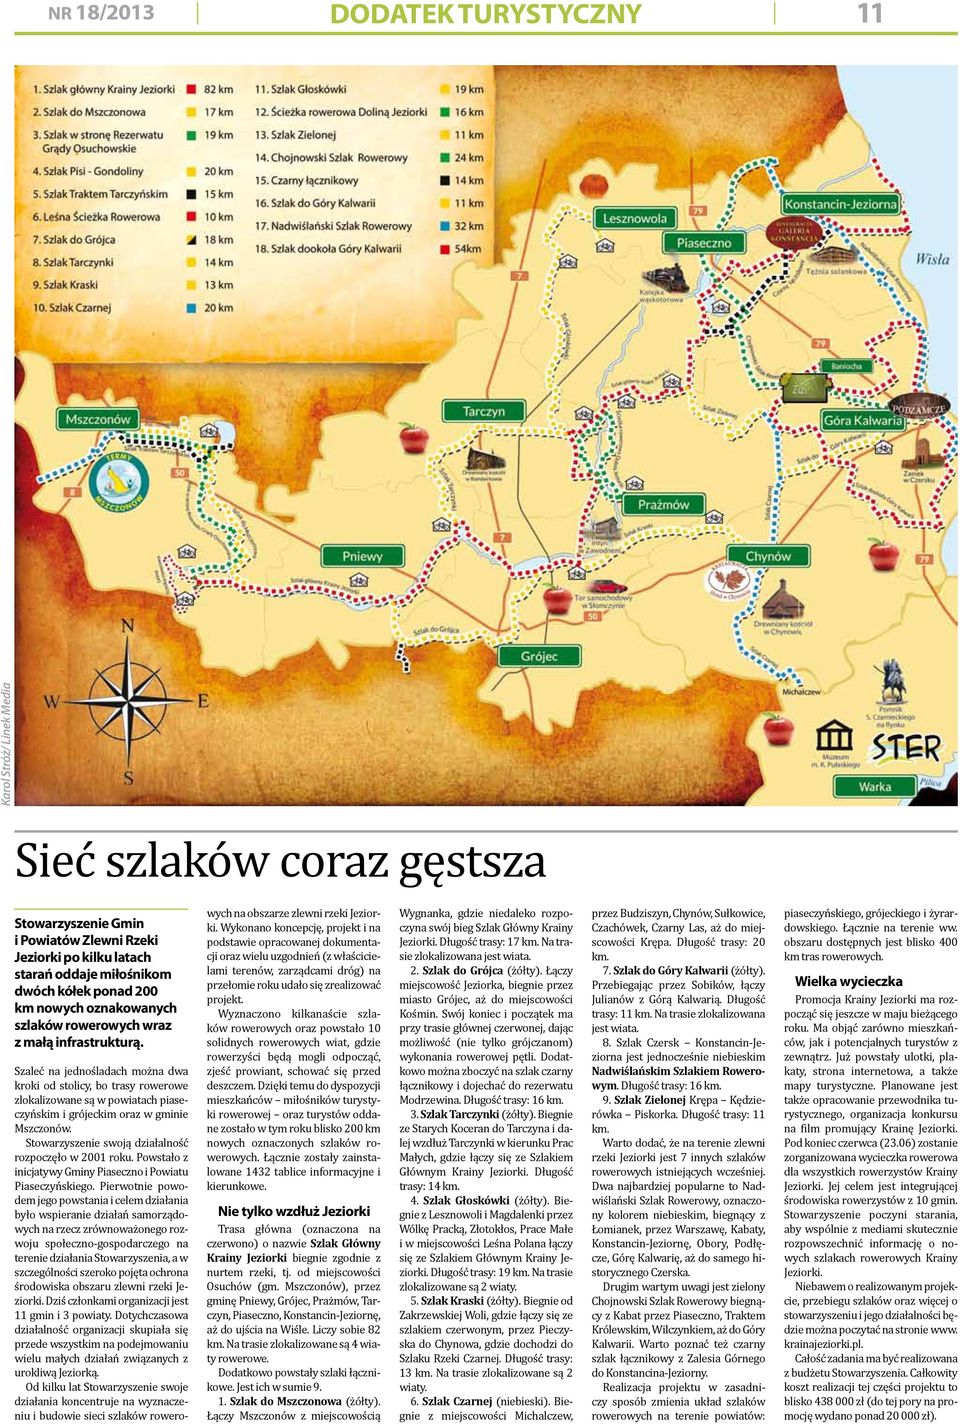 Szaleć na jednośladach można dwa kroki od stolicy, bo trasy rowerowe zlokalizowane są w powiatach piaseczyńskim i grójeckim oraz w gminie Mszczonów.